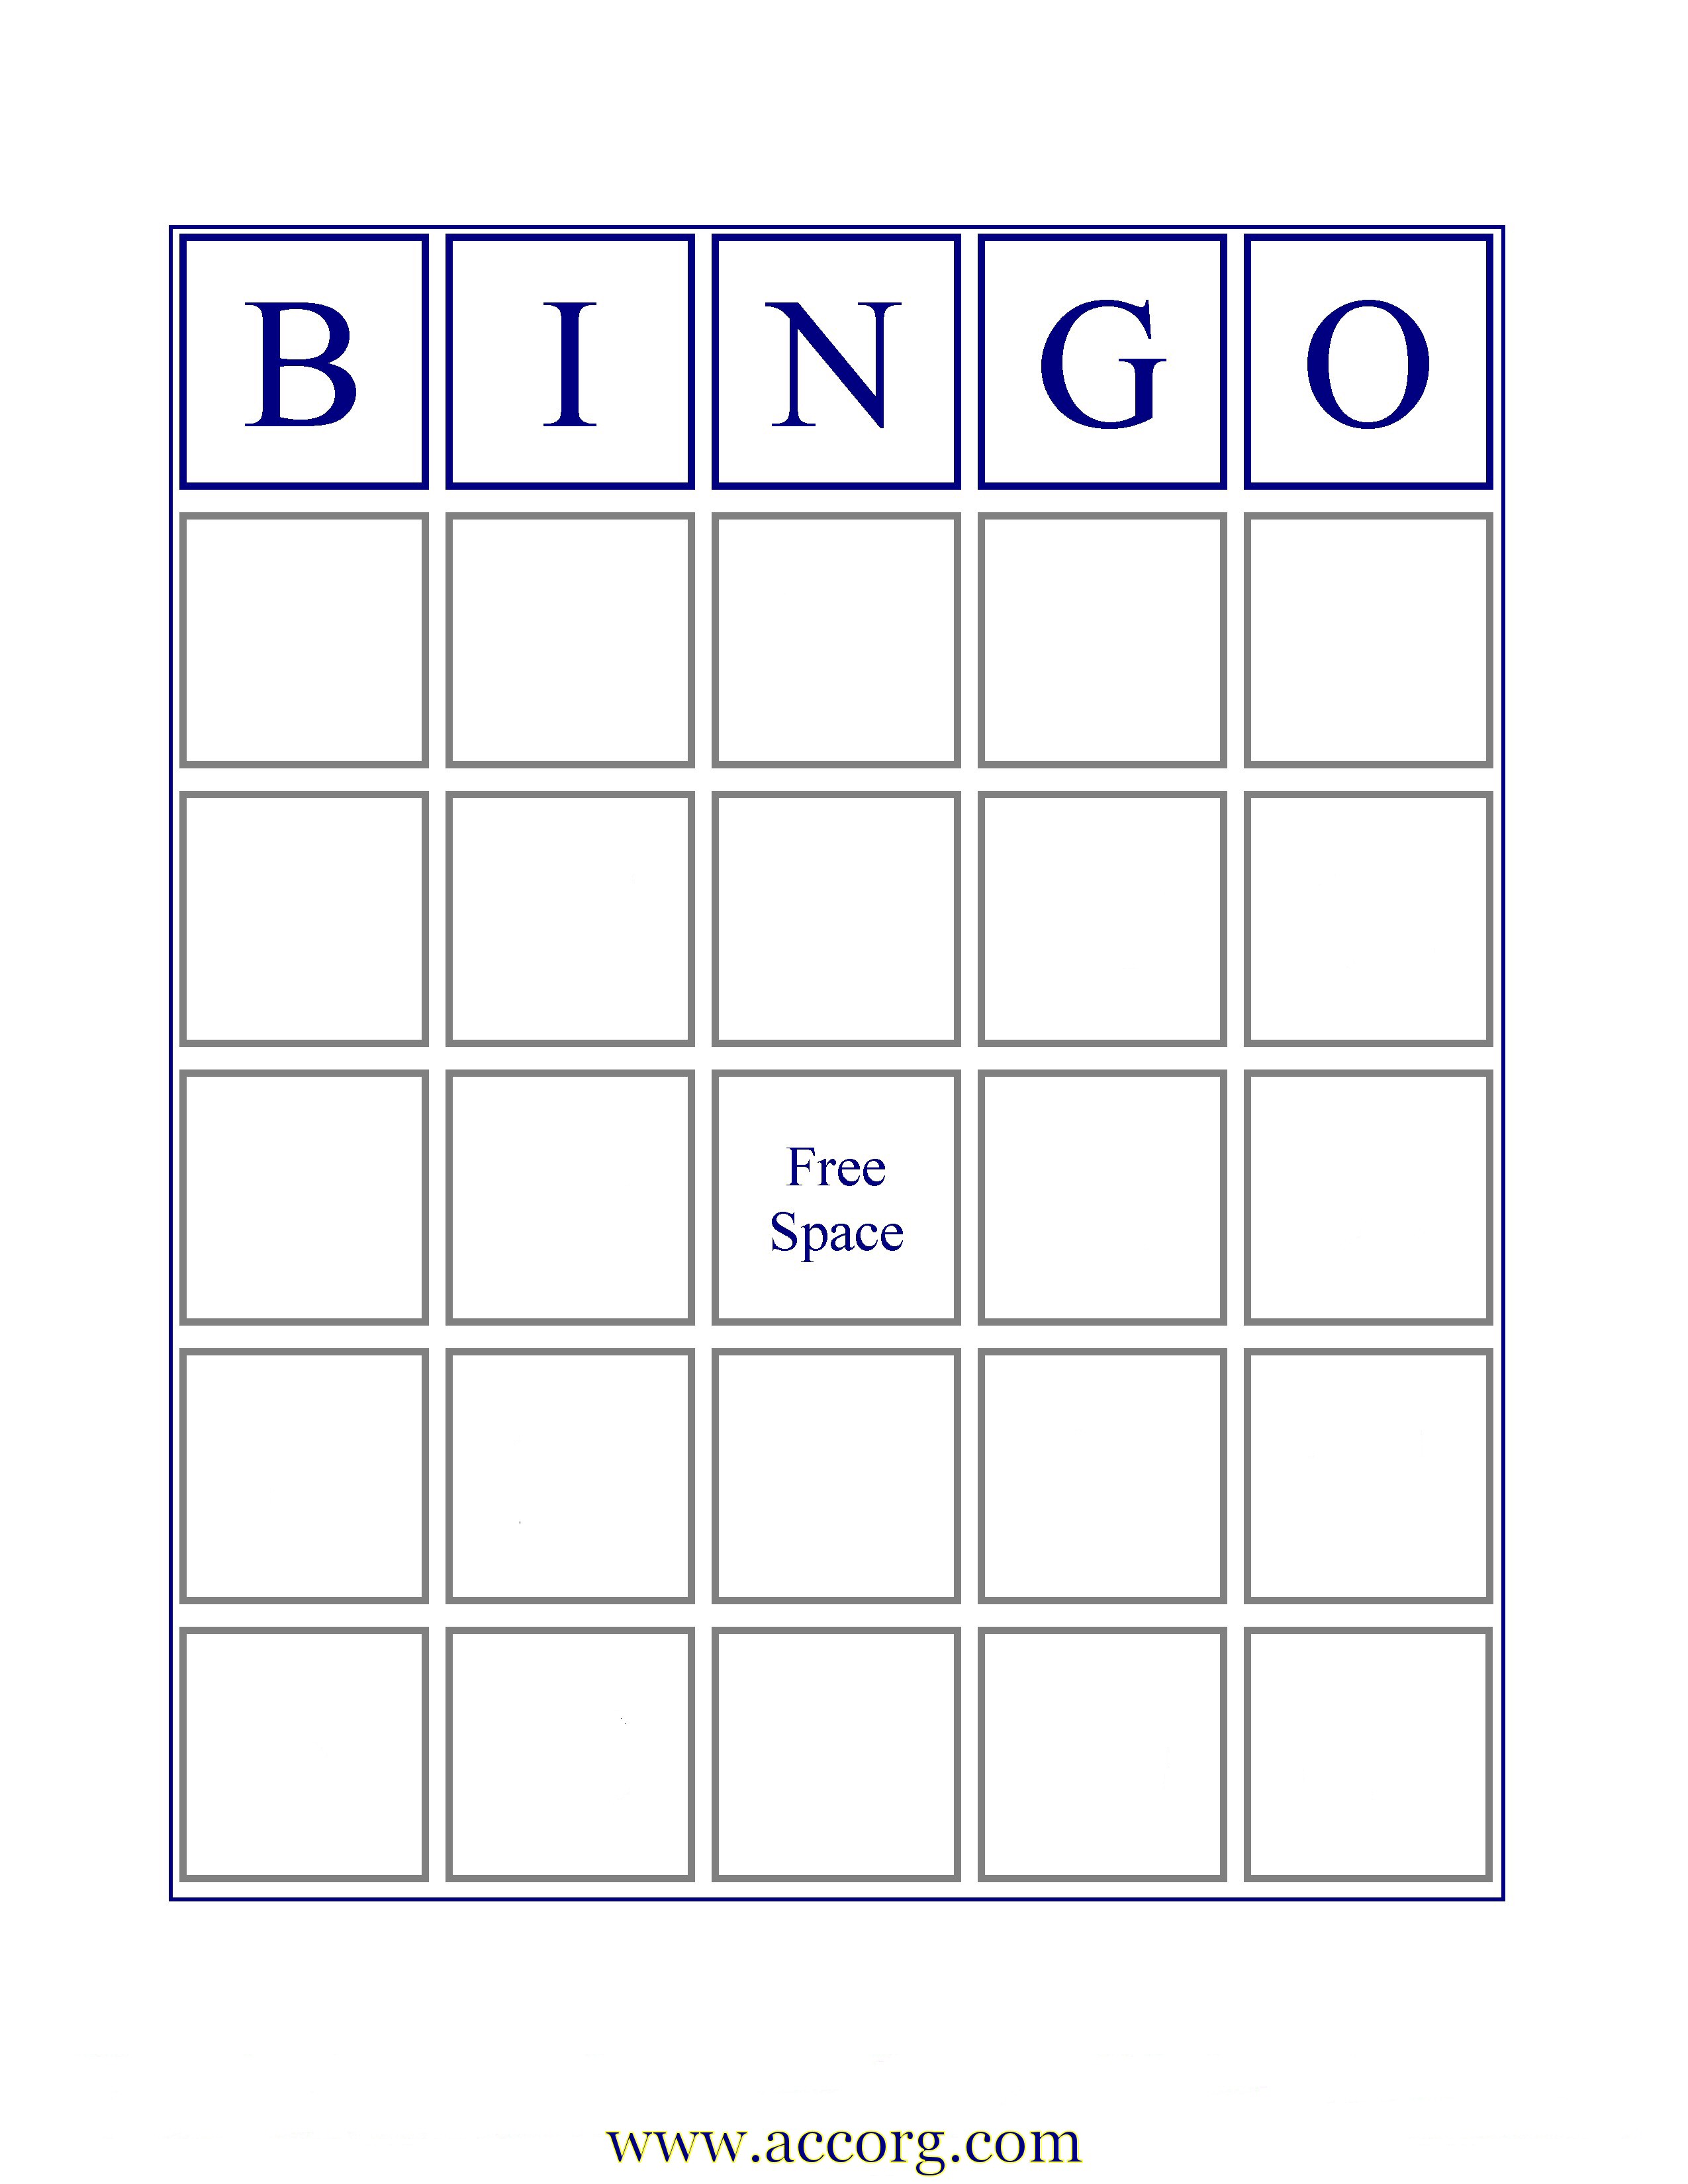 printable-blank-bingo-card-printable-world-holiday